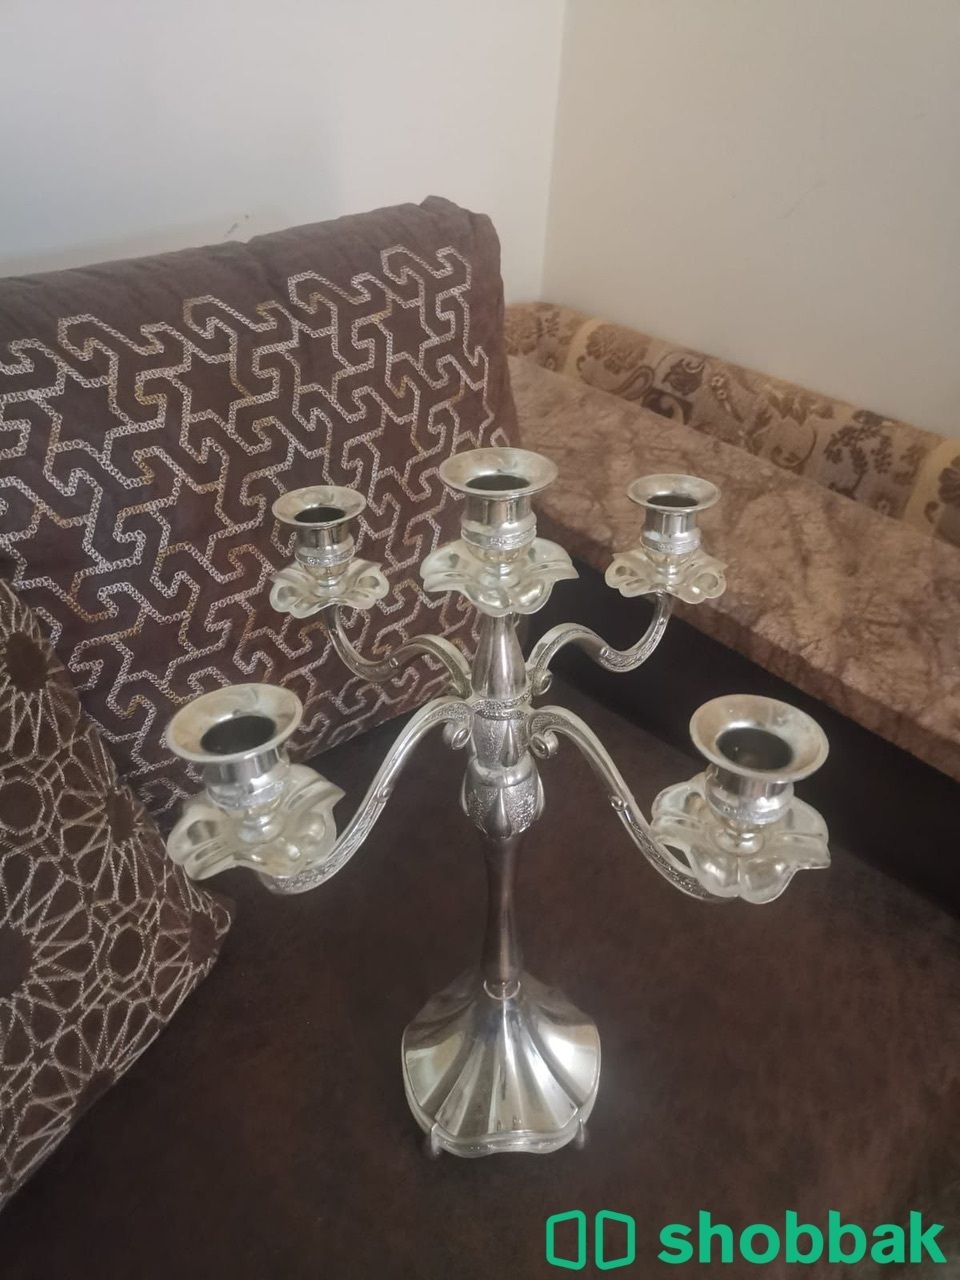 حاملة شموع بشكل جميل Shobbak Saudi Arabia